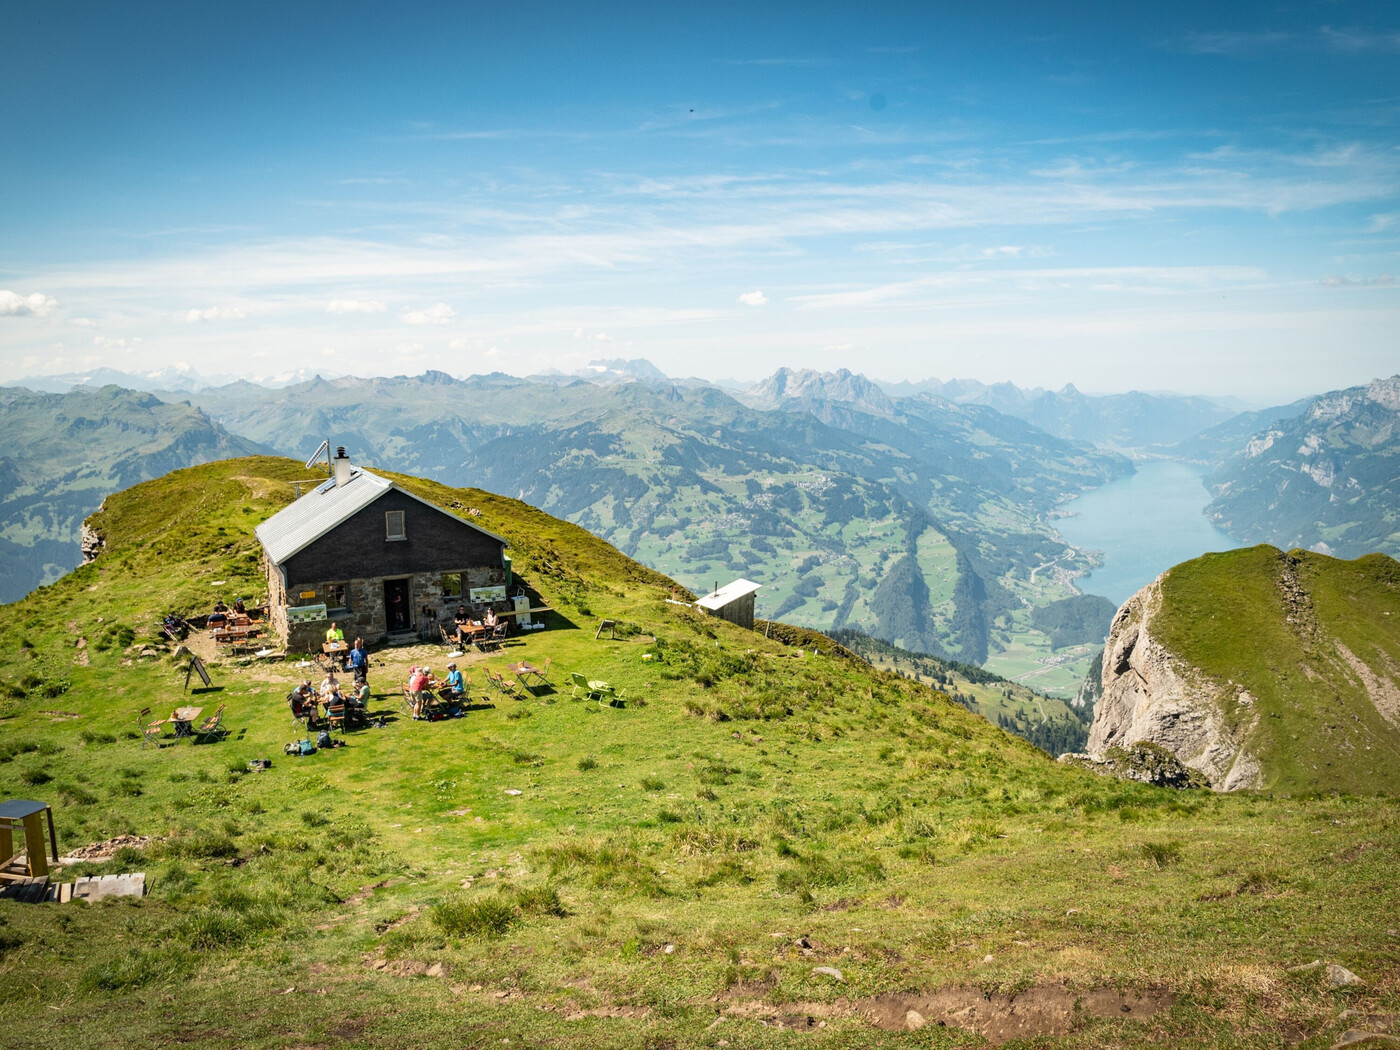 In die Höhe: Die Gipfelhütte Alvier auf 2342 Meter über Meer östlich des Walensees gehört zu einem schönen Aussichtspunkt in der Ostschweiz.